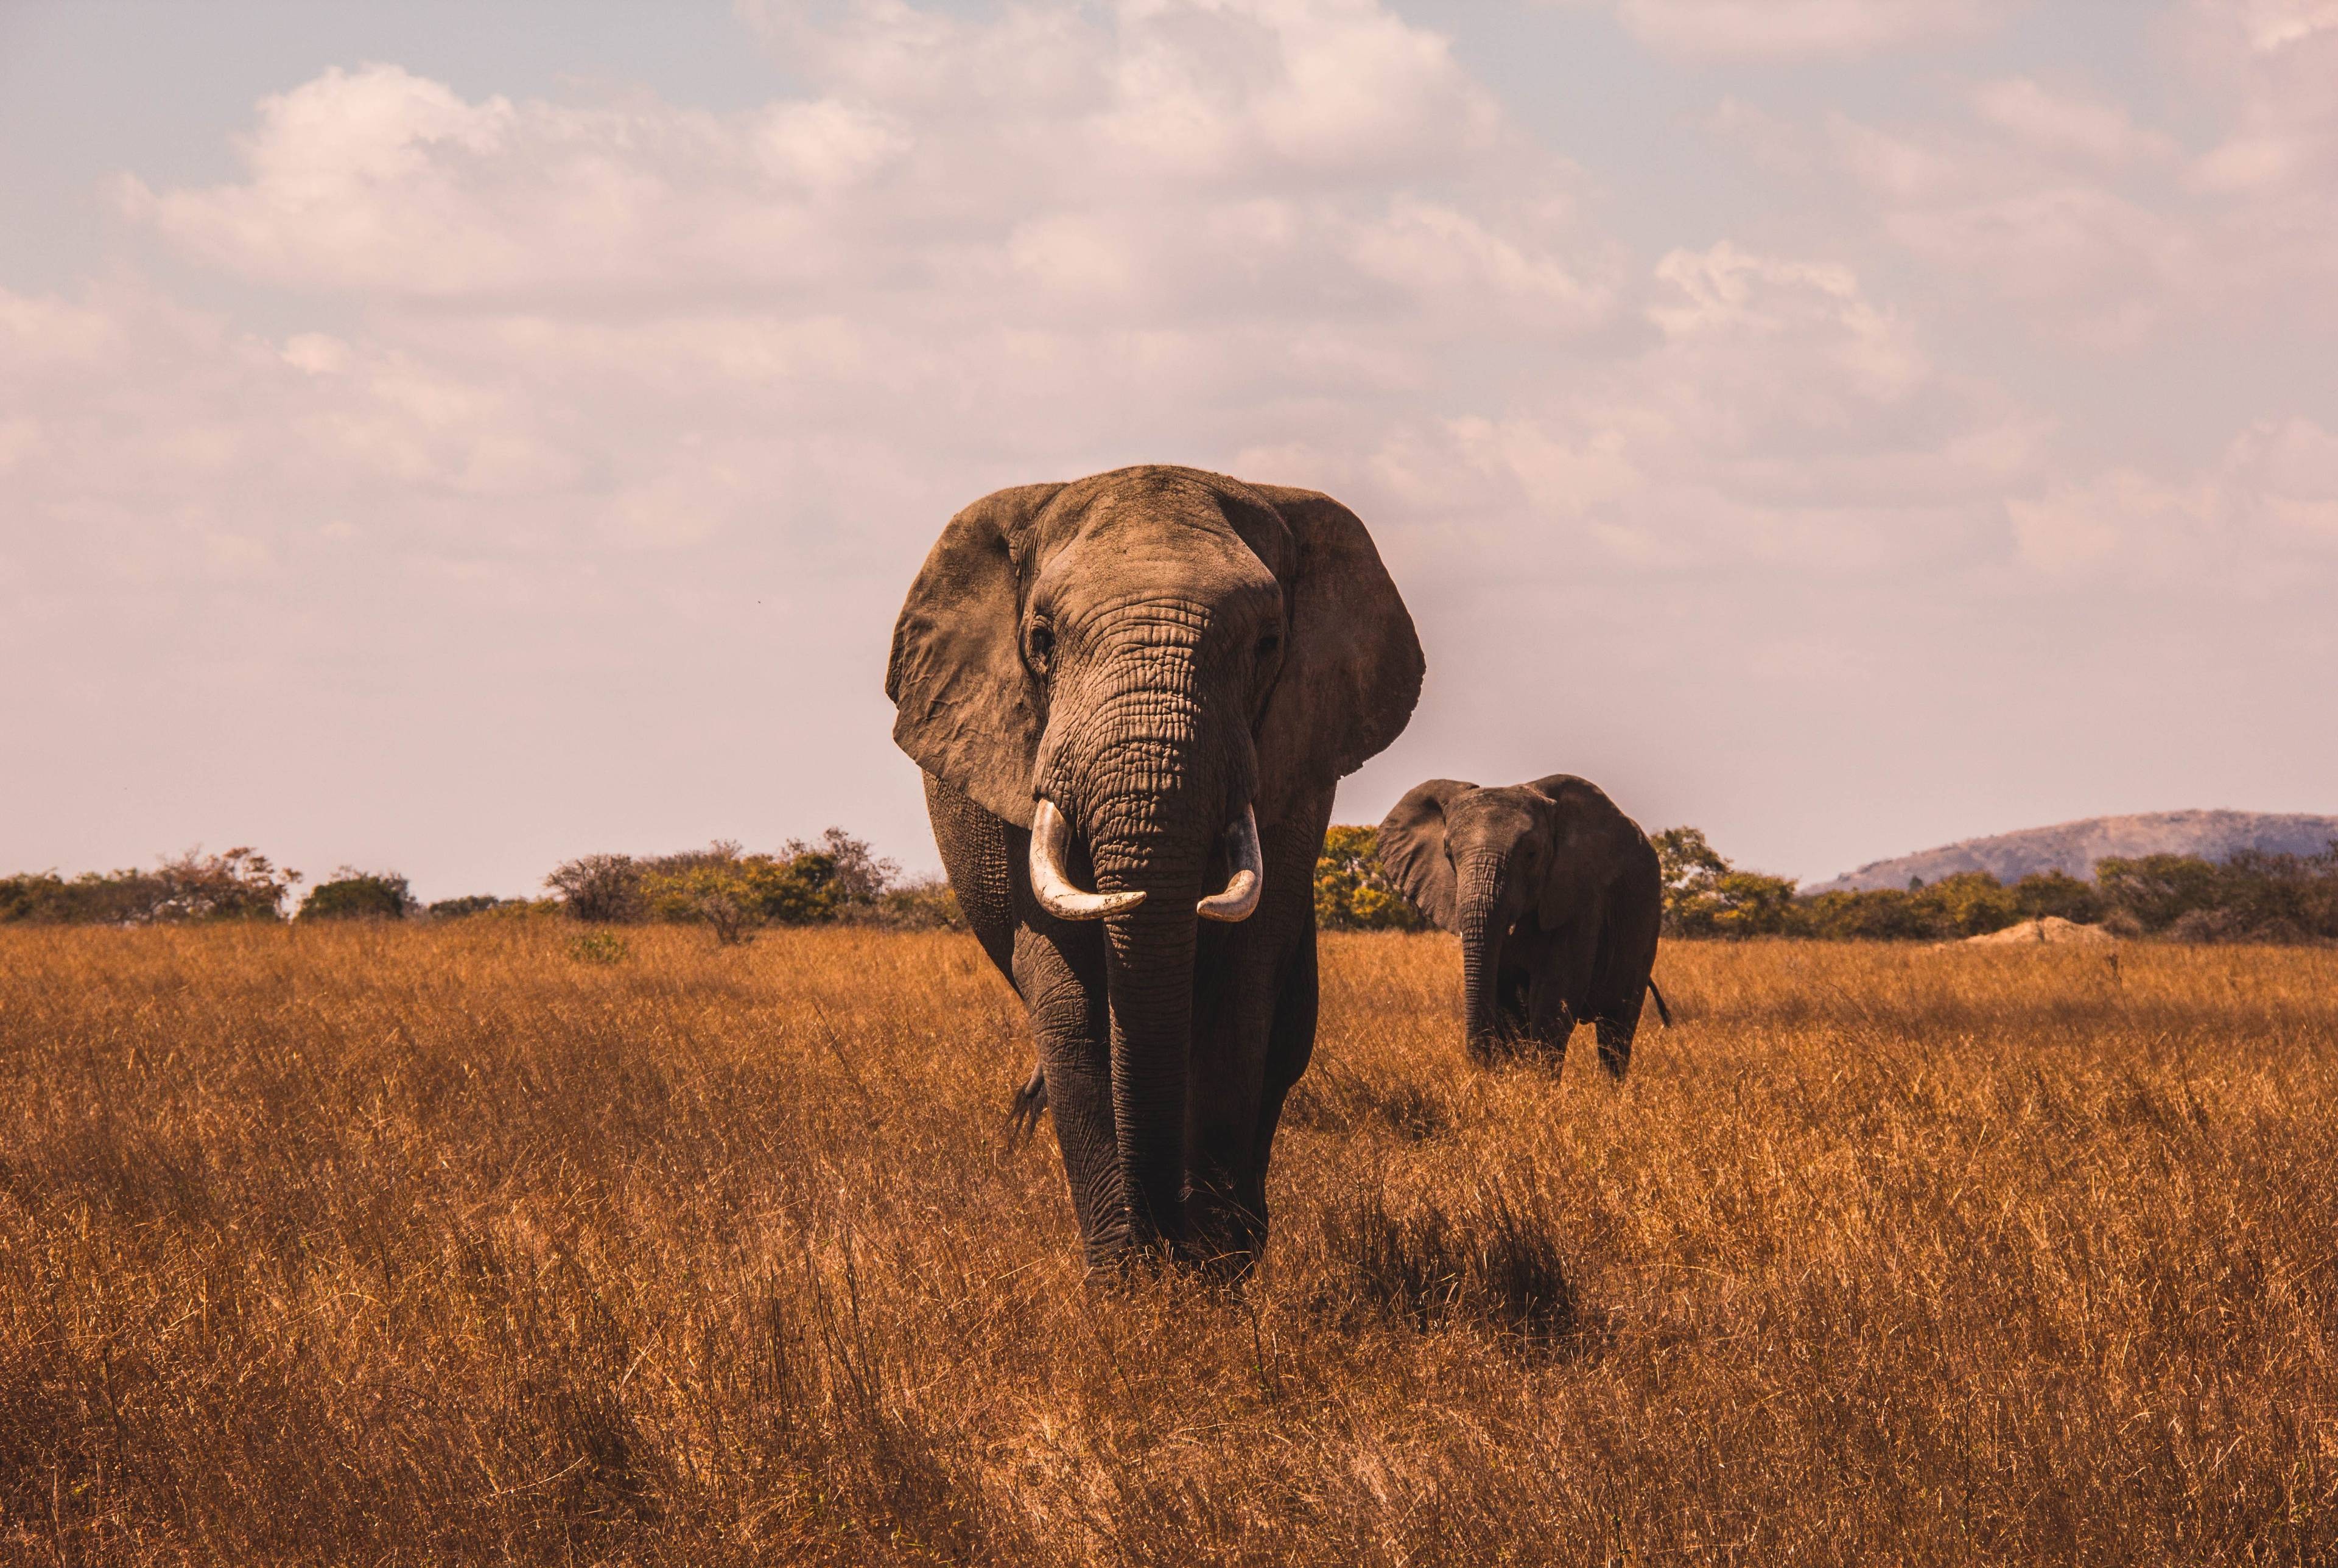 Une expérience inoubliable de safari avec des lions, des éléphants et bien d'autres aventures.